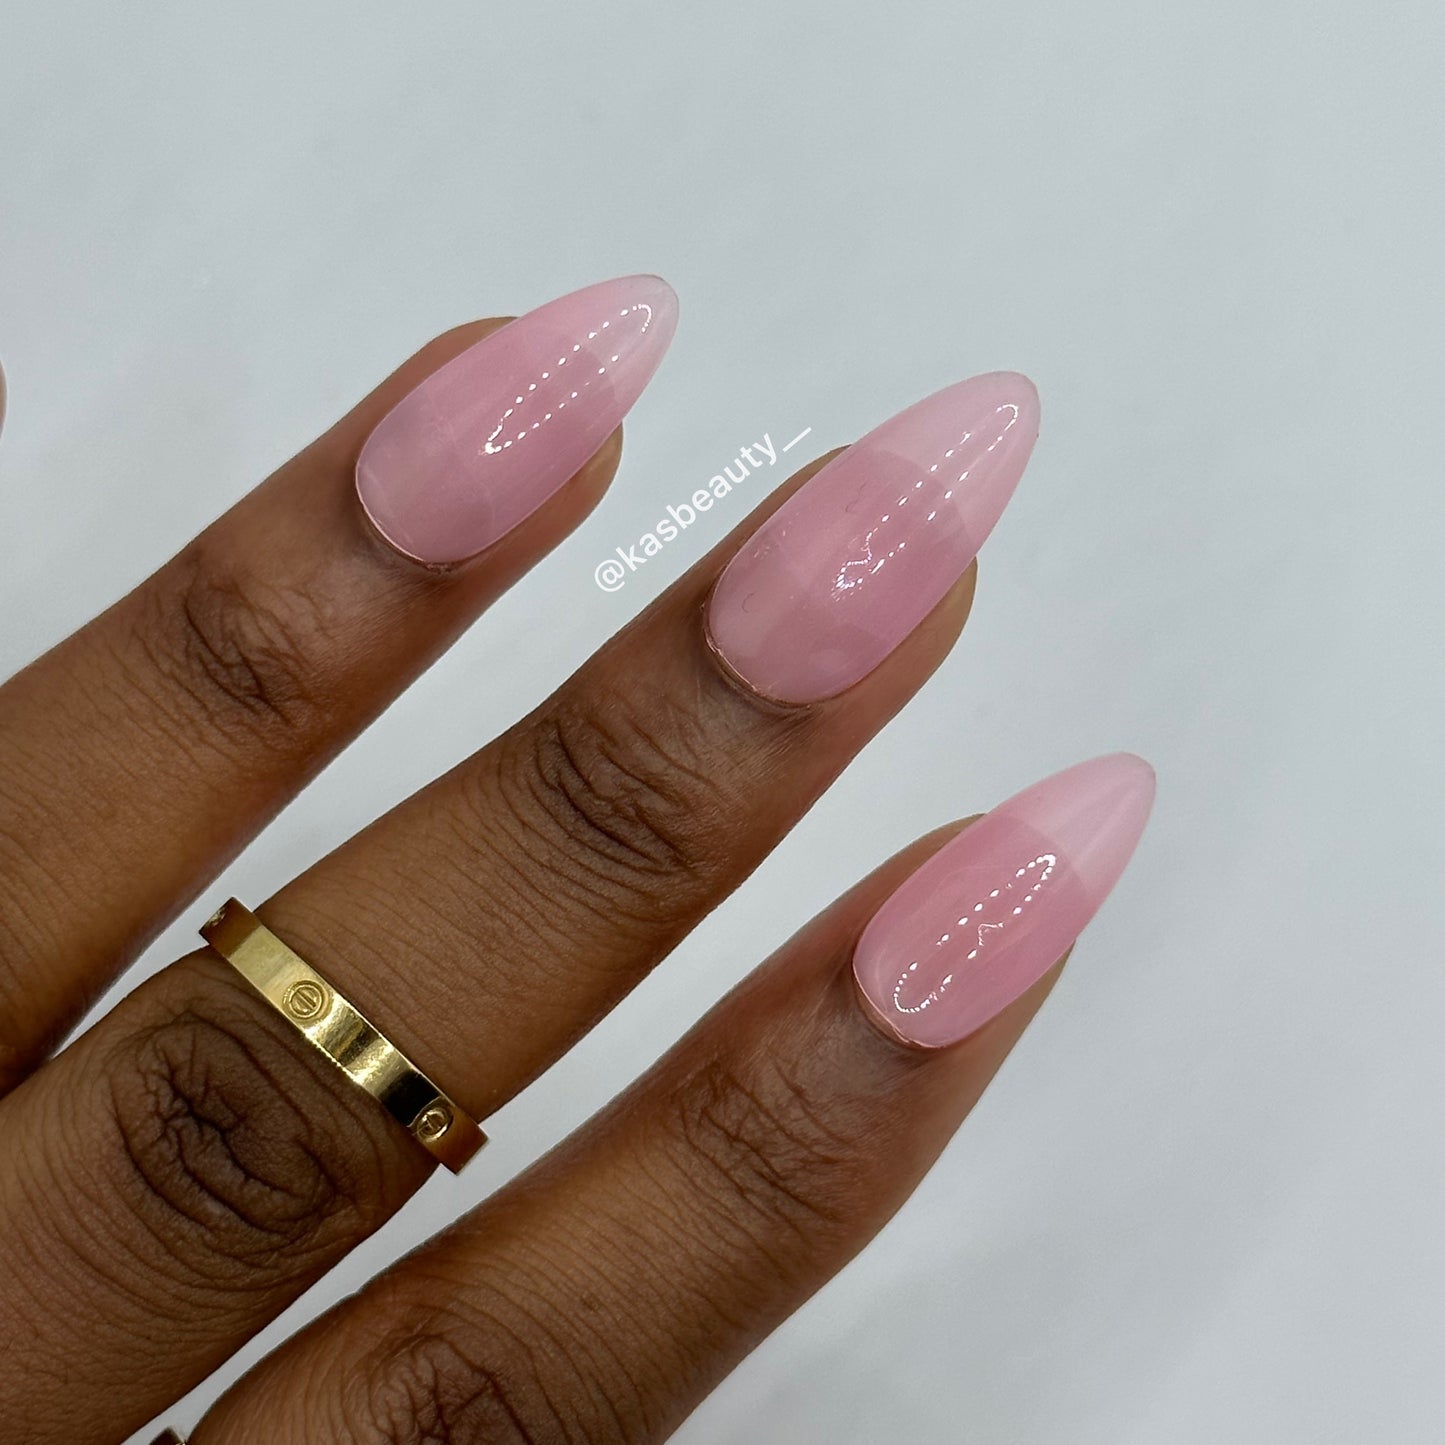 Sheer Pink Press On Nails